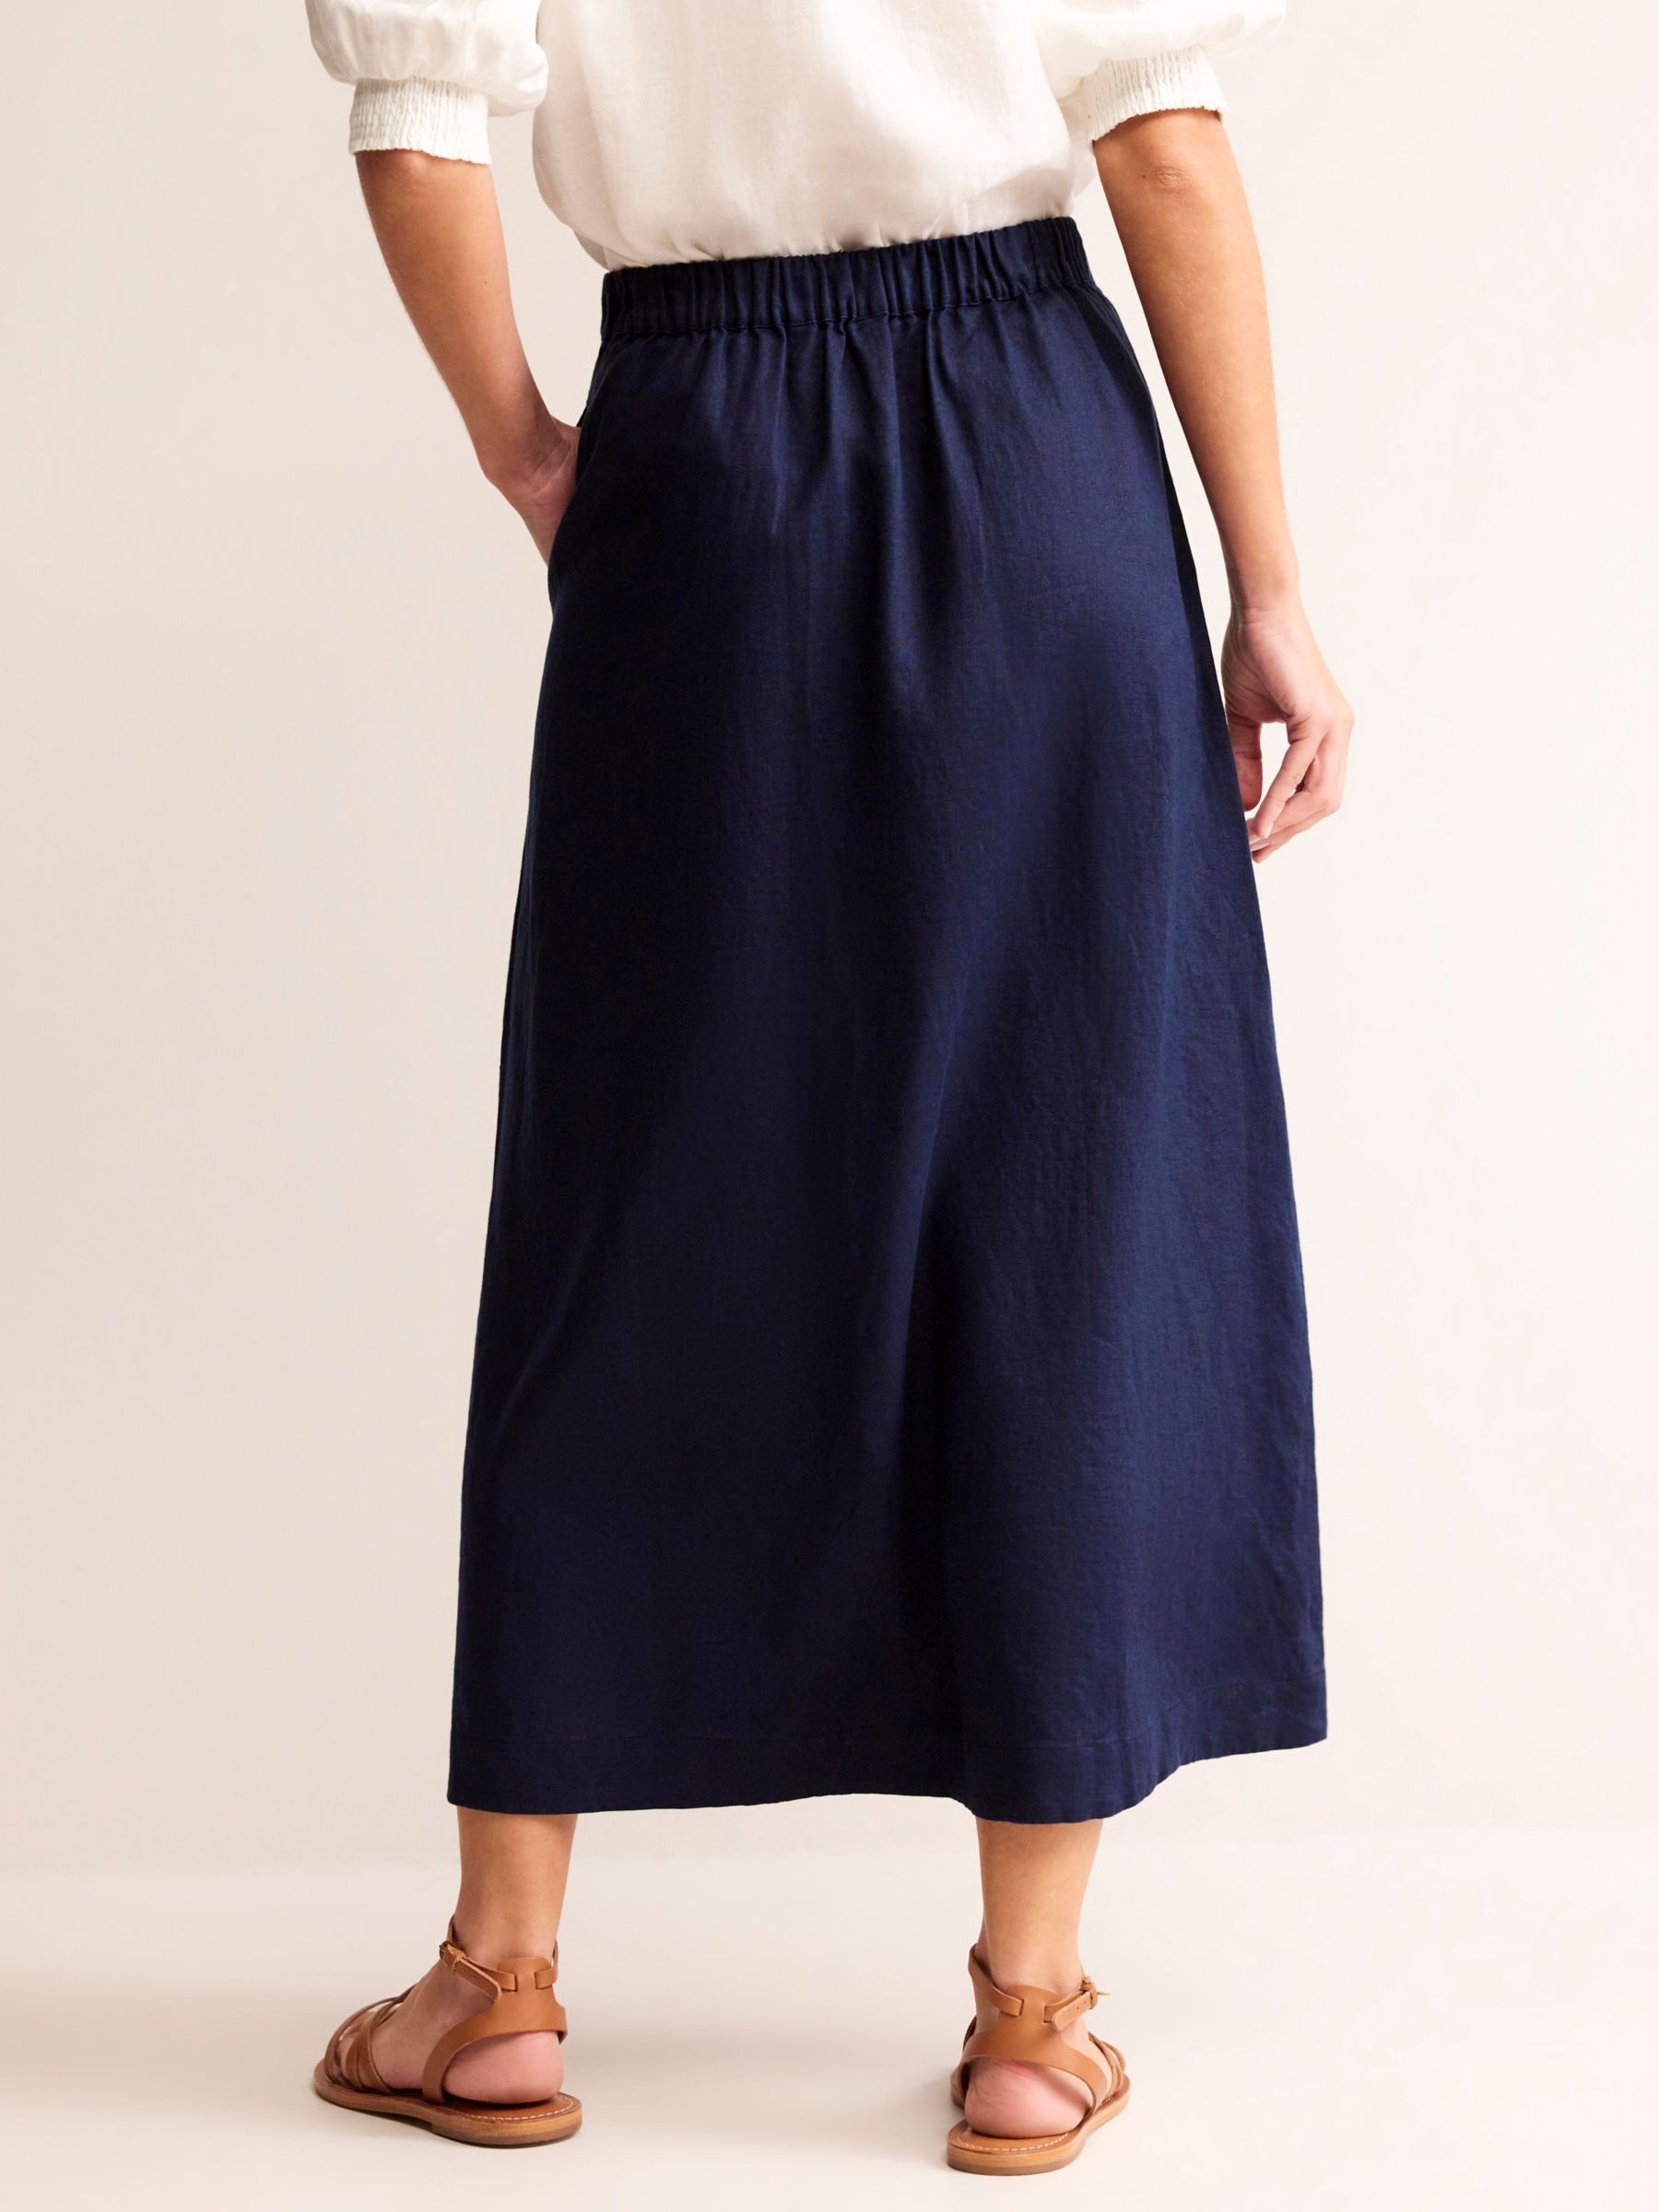 Boden Florence Linen Midi Skirt, Navy, 8